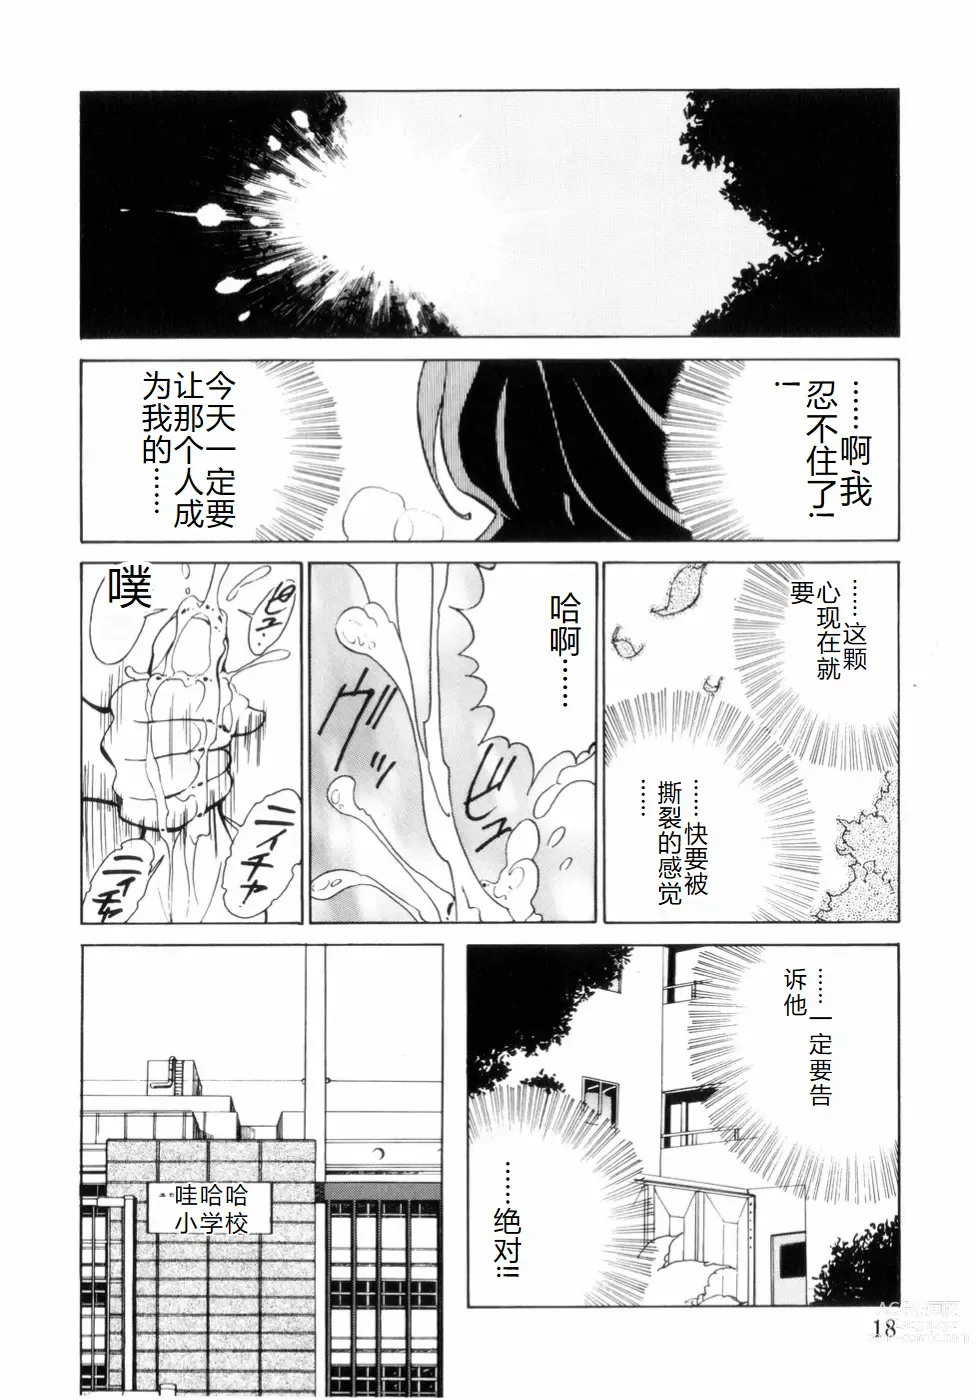 Page 22 of manga Hakujuu no Hasha